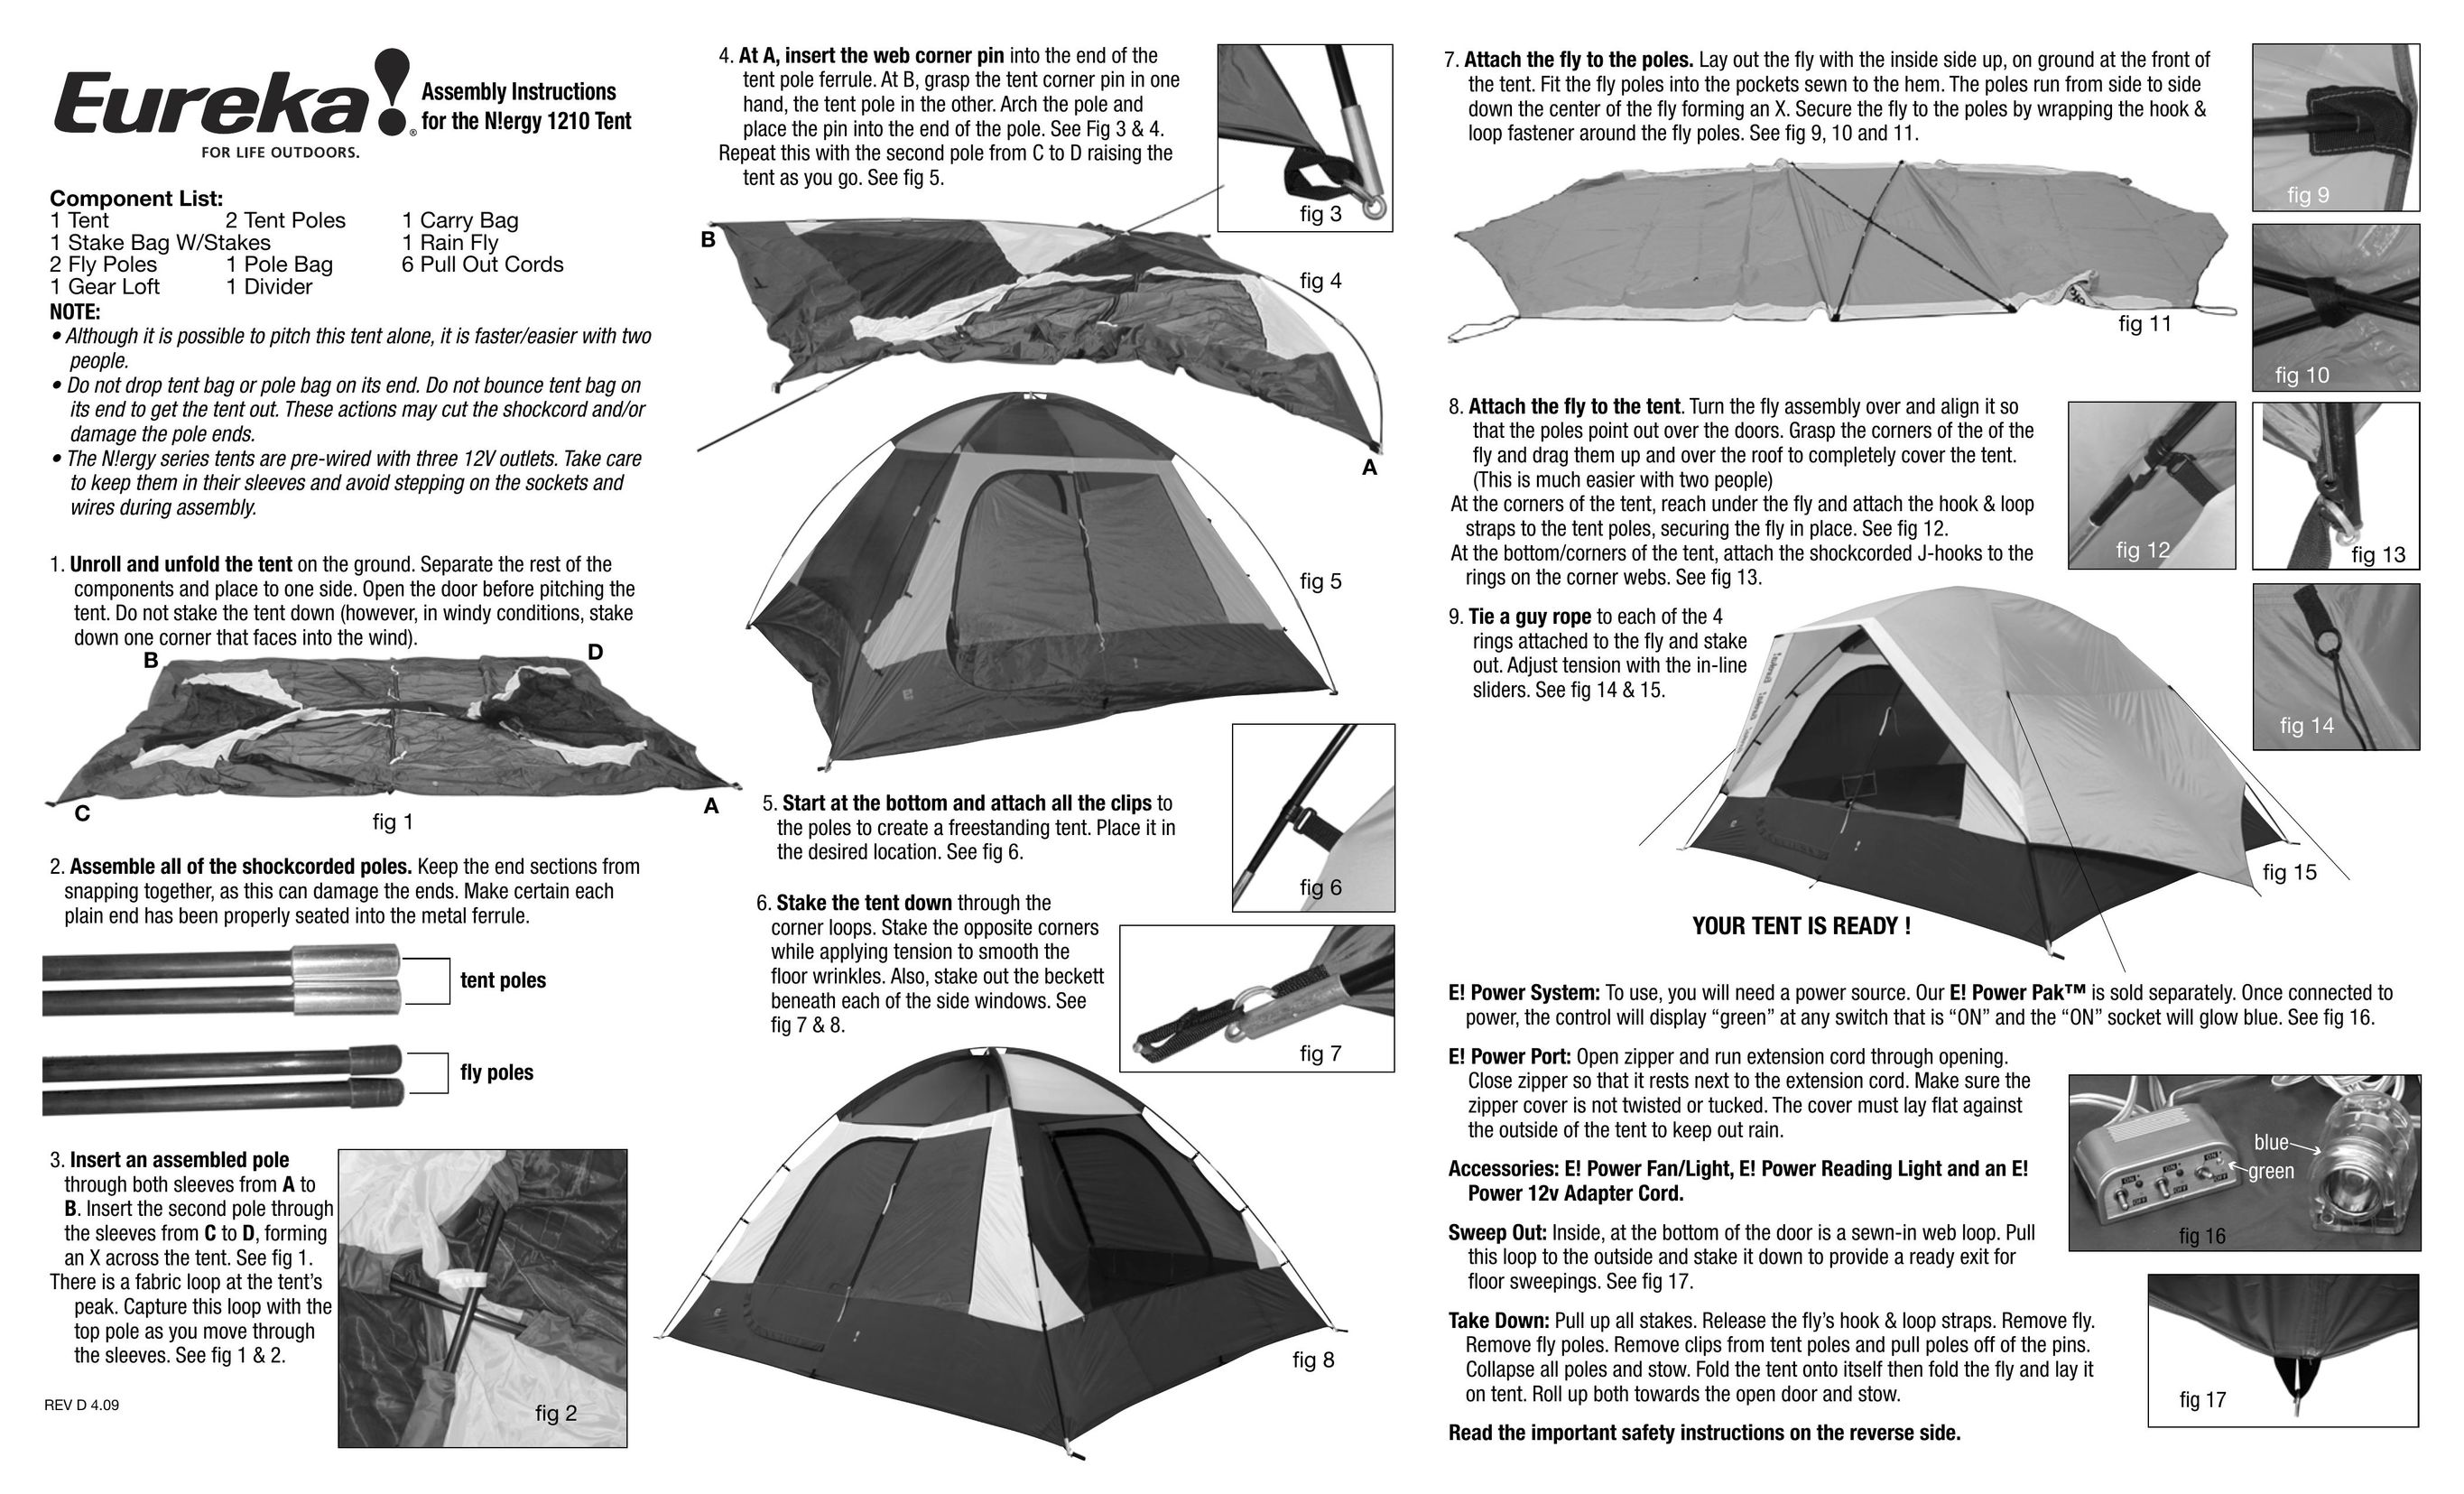 Eureka! Tents N!ergy 1210 Tent User Manual